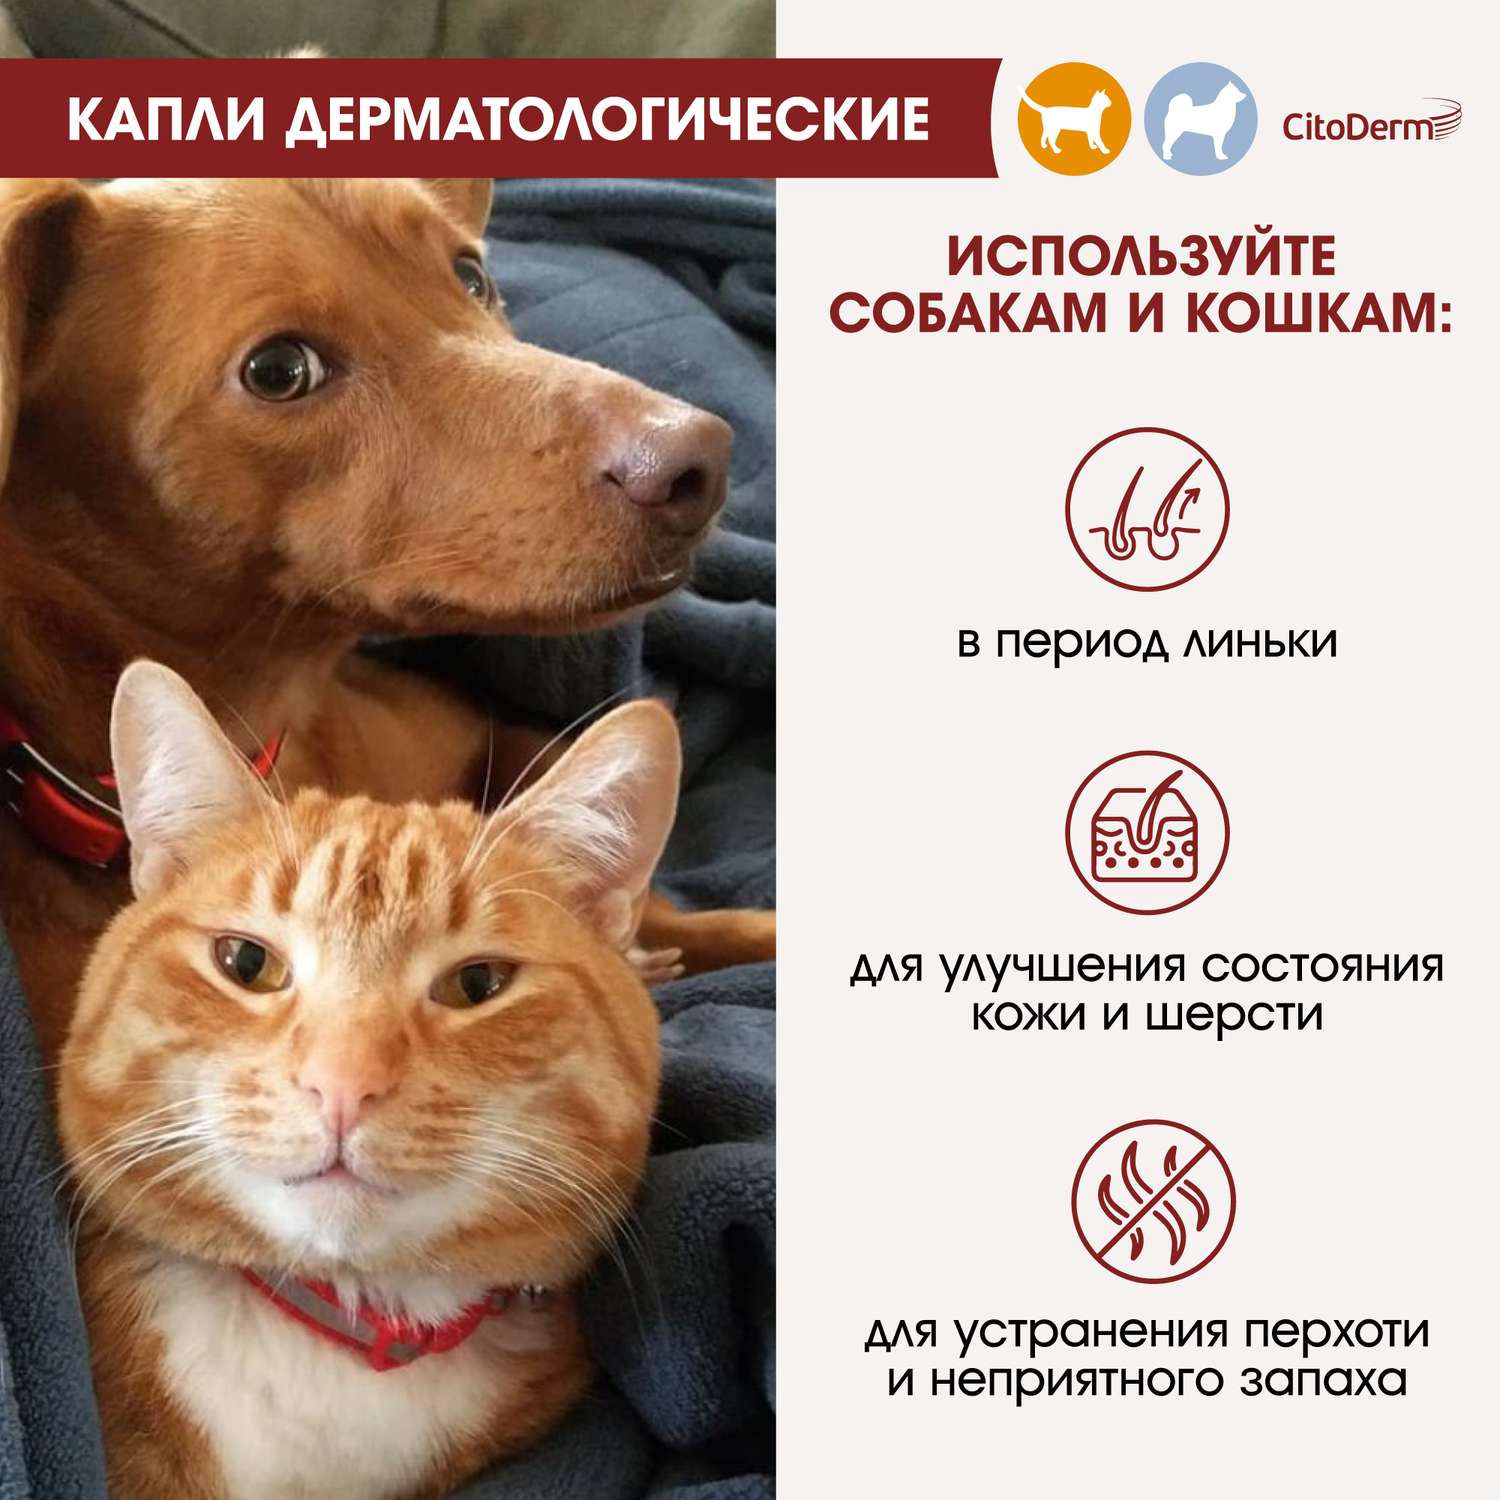 Капли для кошек и собак CitoDerm до 10кг дерматологические 1мл - фото 4